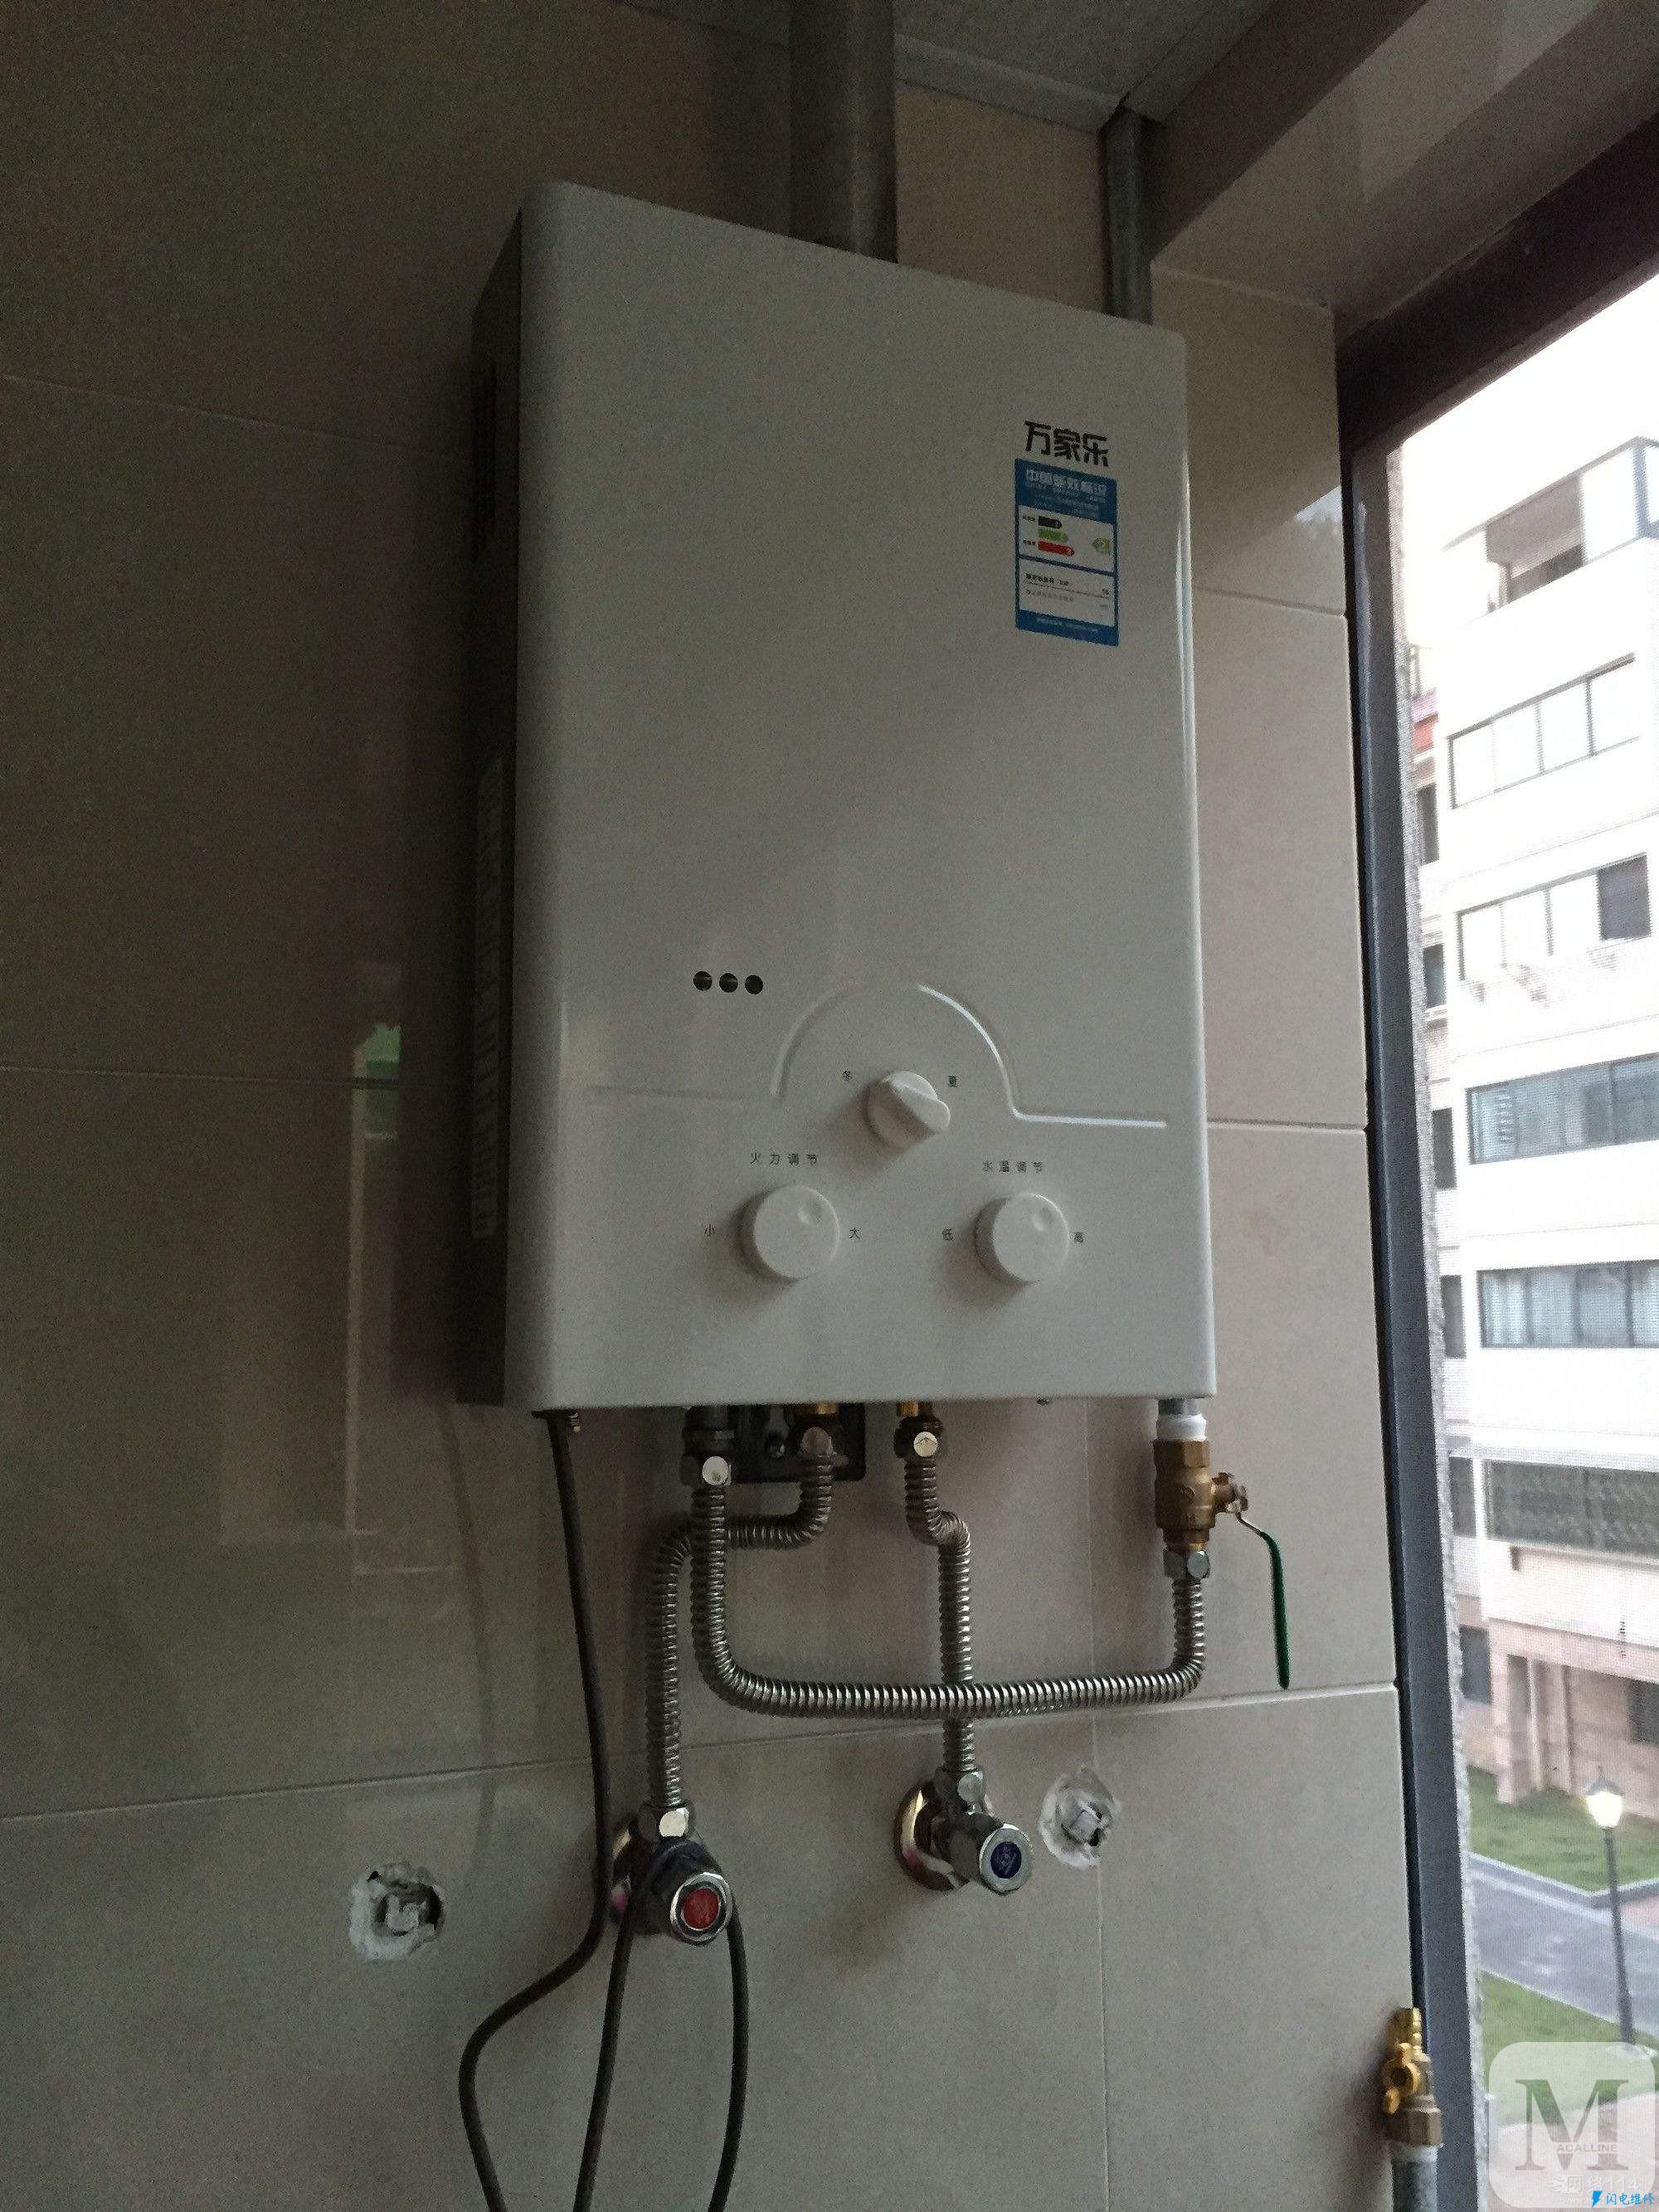 上海金山區熱水器維修服務中心